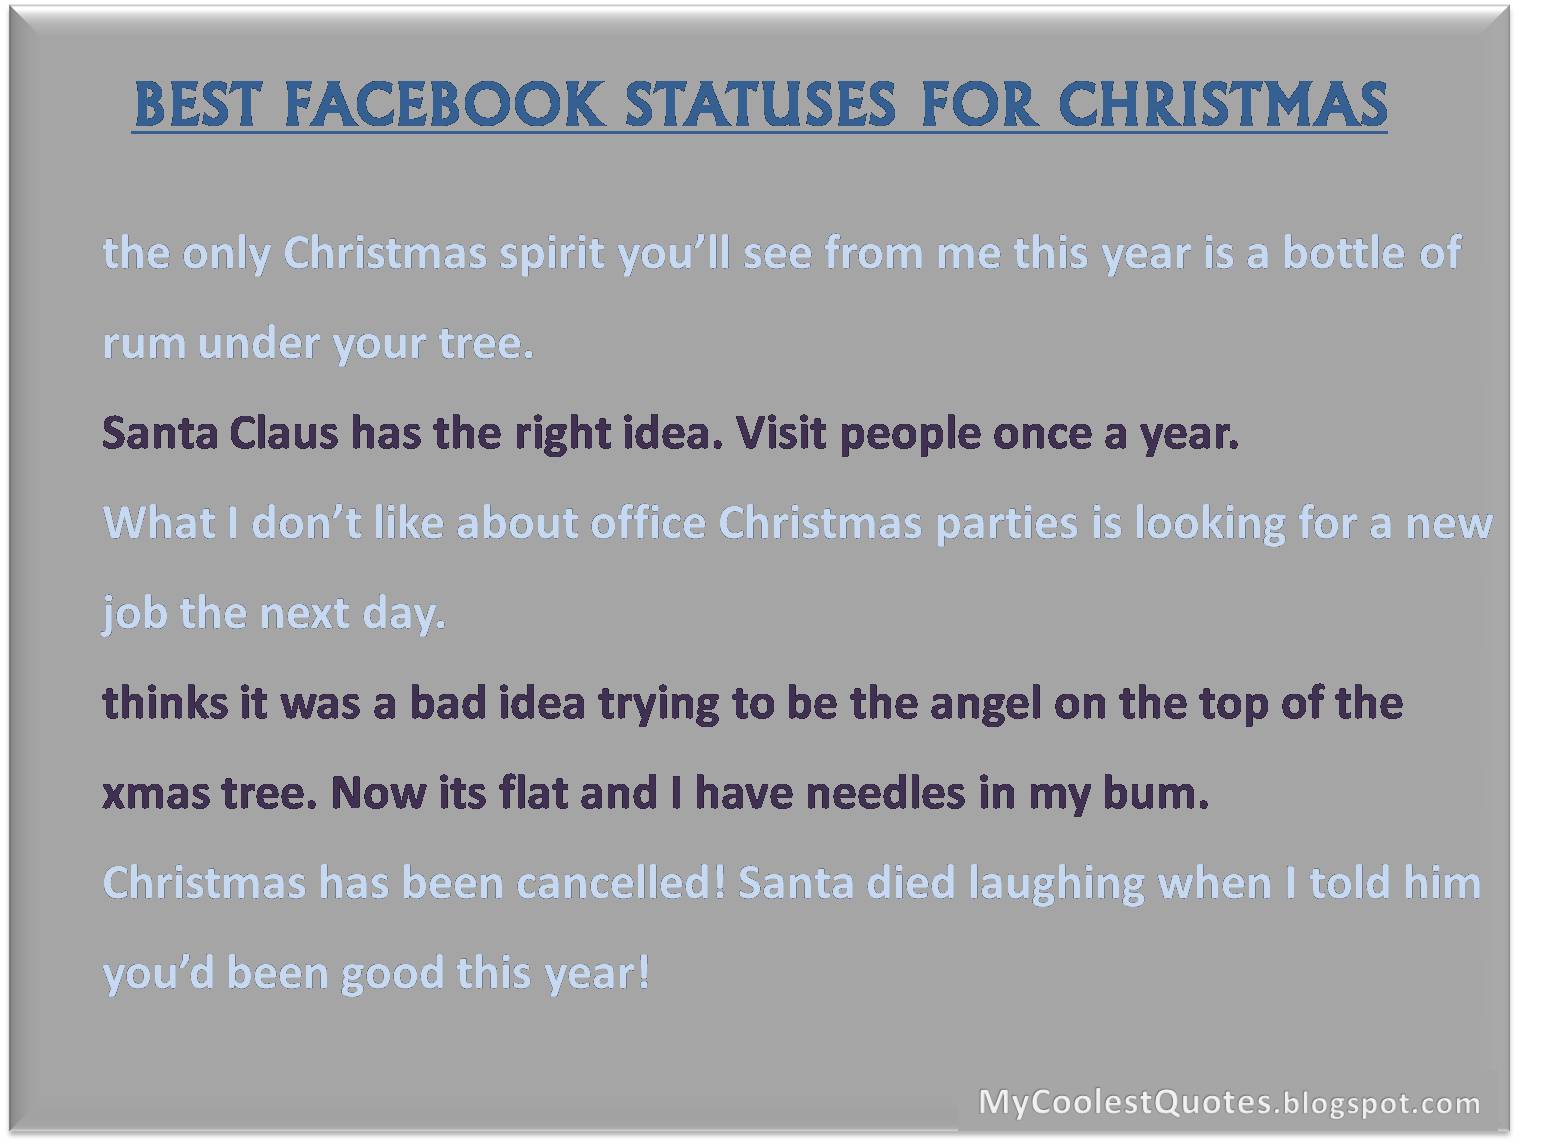 http://2.bp.blogspot.com/-Kfq1VIaCwaQ/TvWTMXmcOkI/AAAAAAAACak/Z-HUu7lQW6E/s1600/Part+3+of+Best+Facebook+Statuses+for+Christmas.jpg